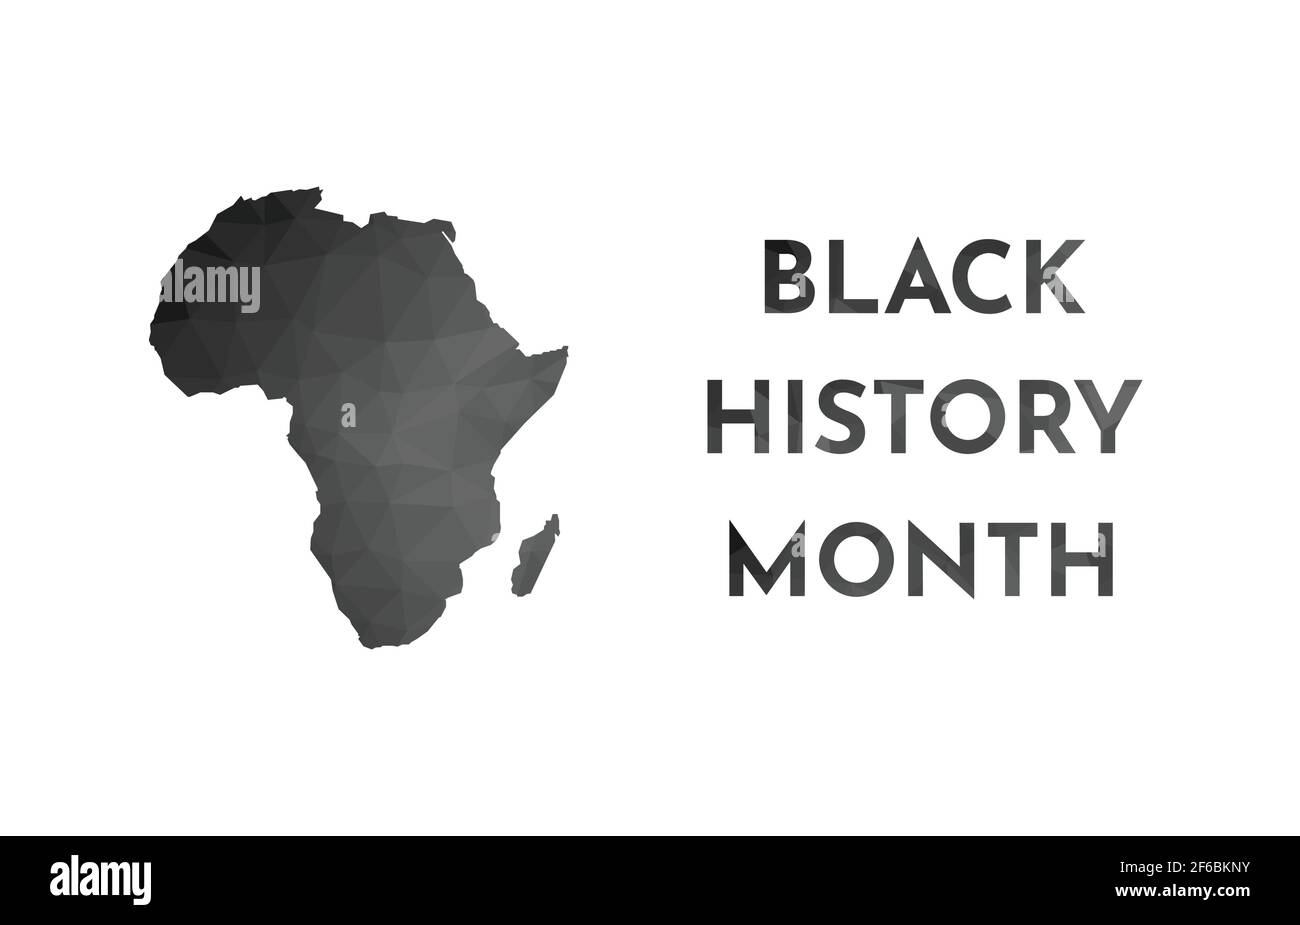 Bannière d'illustration vectorielle pour le mois de l'historique des noirs. Silhouette basse en poly noir de la carte et du texte de l'Afrique. Arrière-plan blanc. Illustration de Vecteur